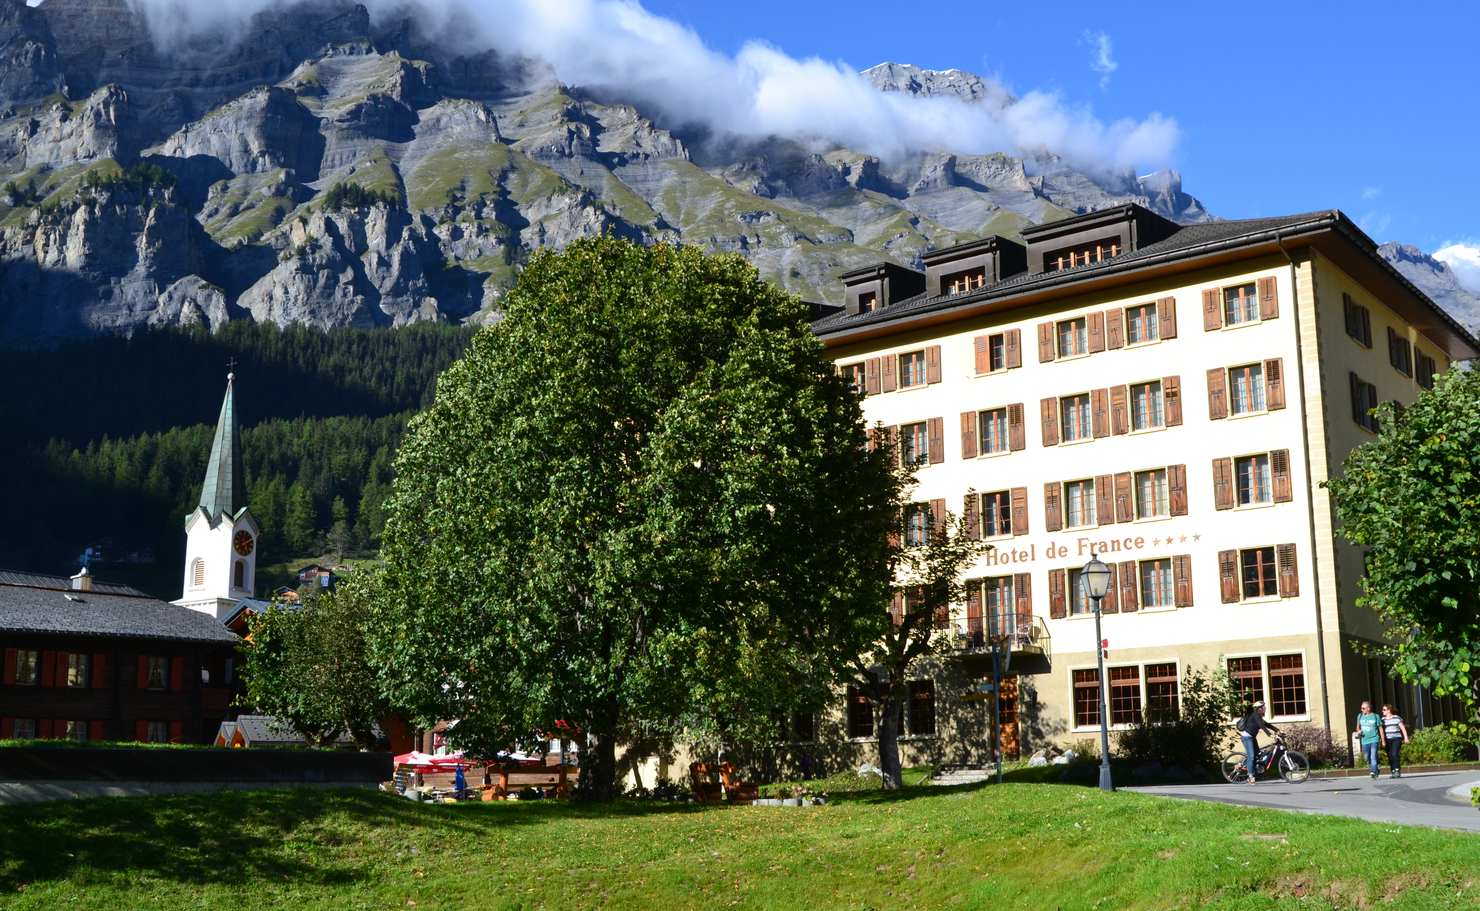 Hotel de France in Leukerbad